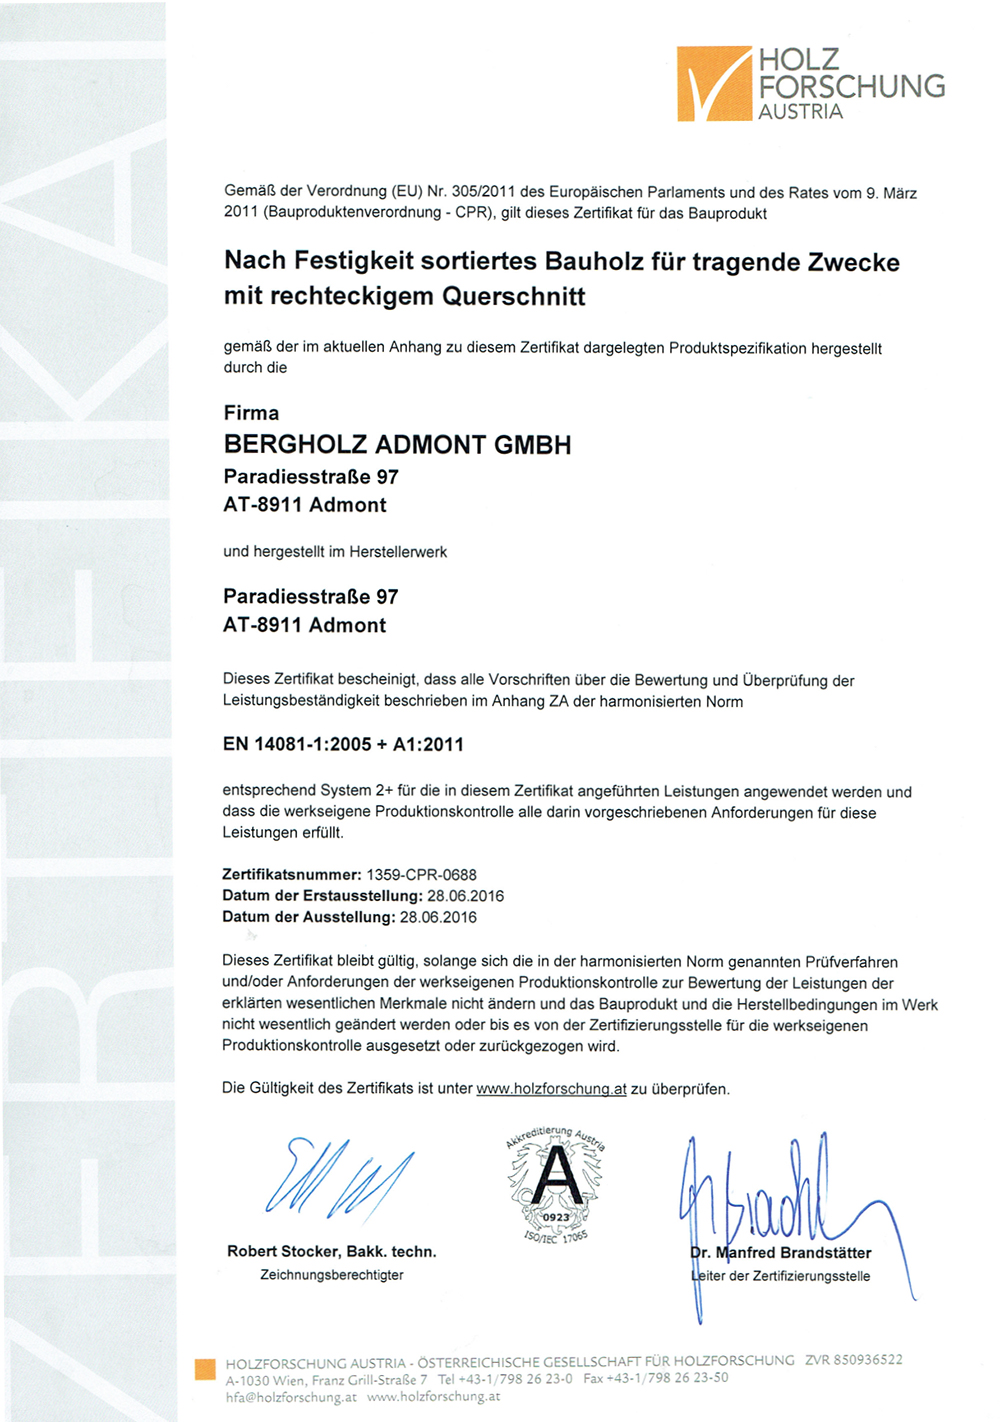 Zertifizierung von Holzforschung Austria